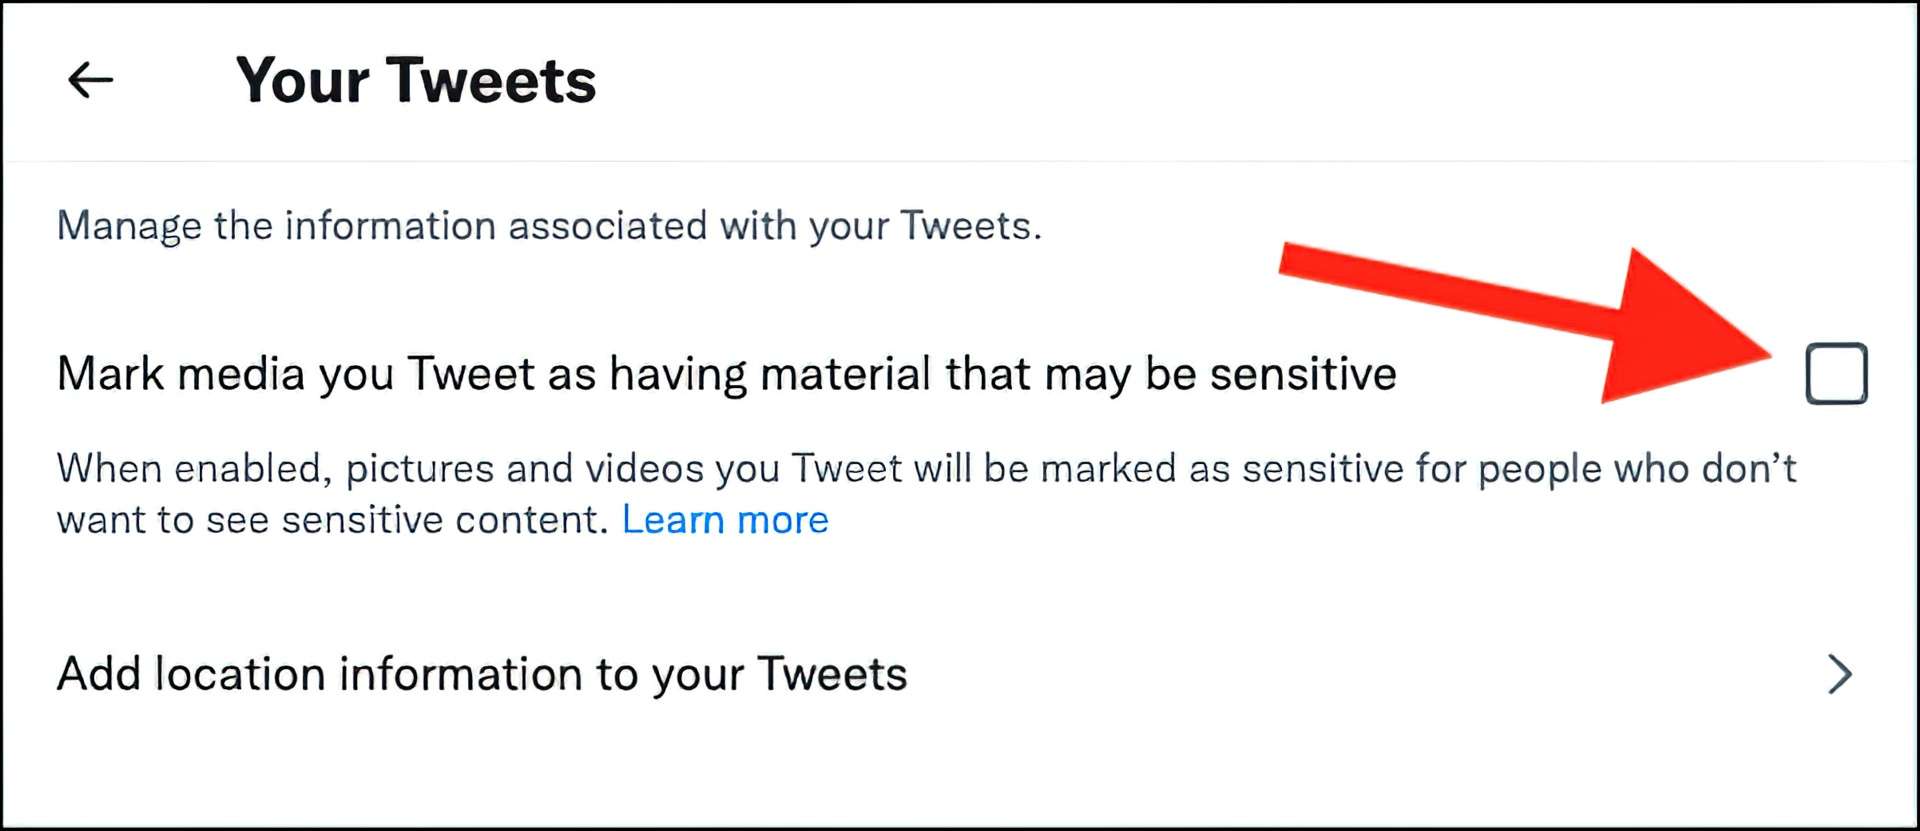 Come consentire contenuti sensibili su Twitter?